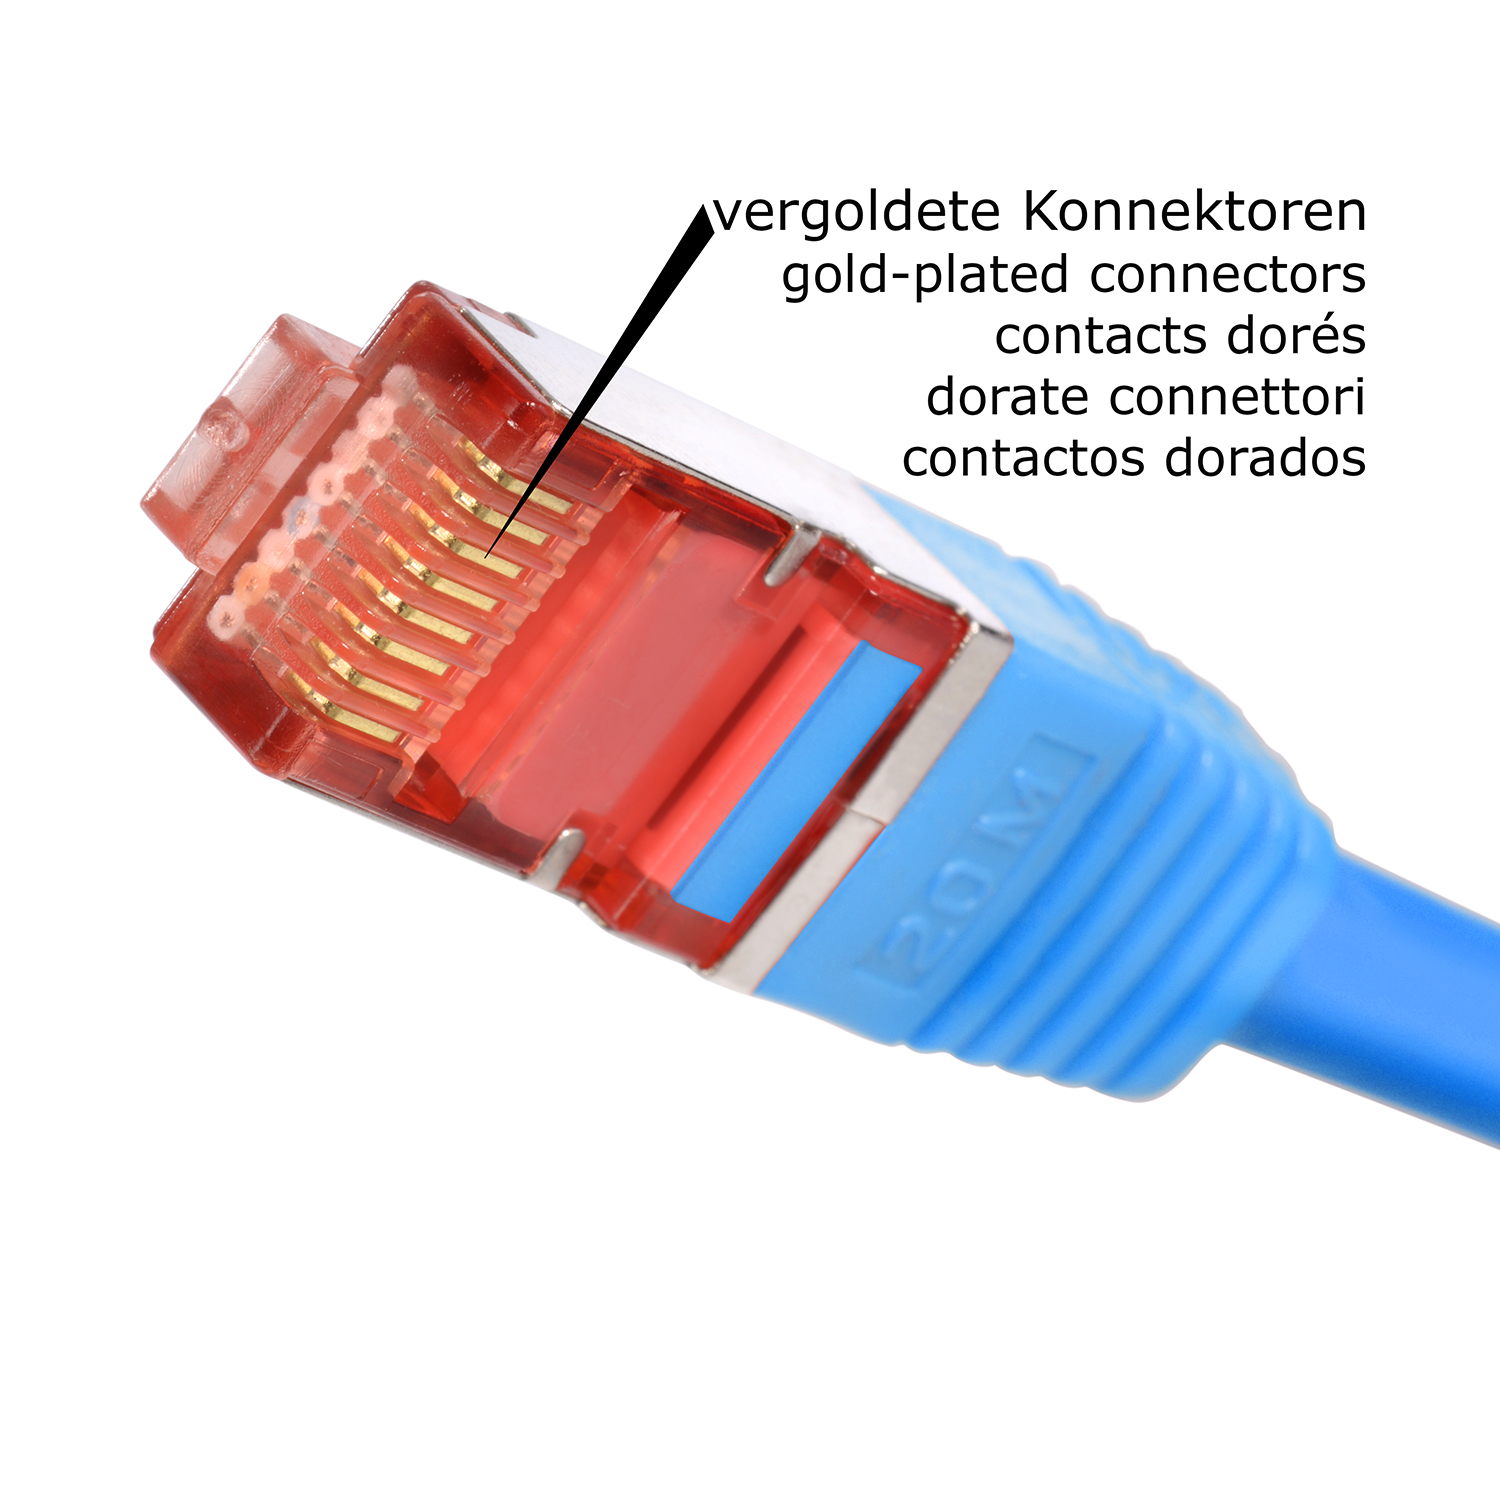 Netzwerkkabel, 3m TPFNET 3 Patchkabel 1000Mbit, Pack / 5er Netzwerkkabel S/FTP m blau,